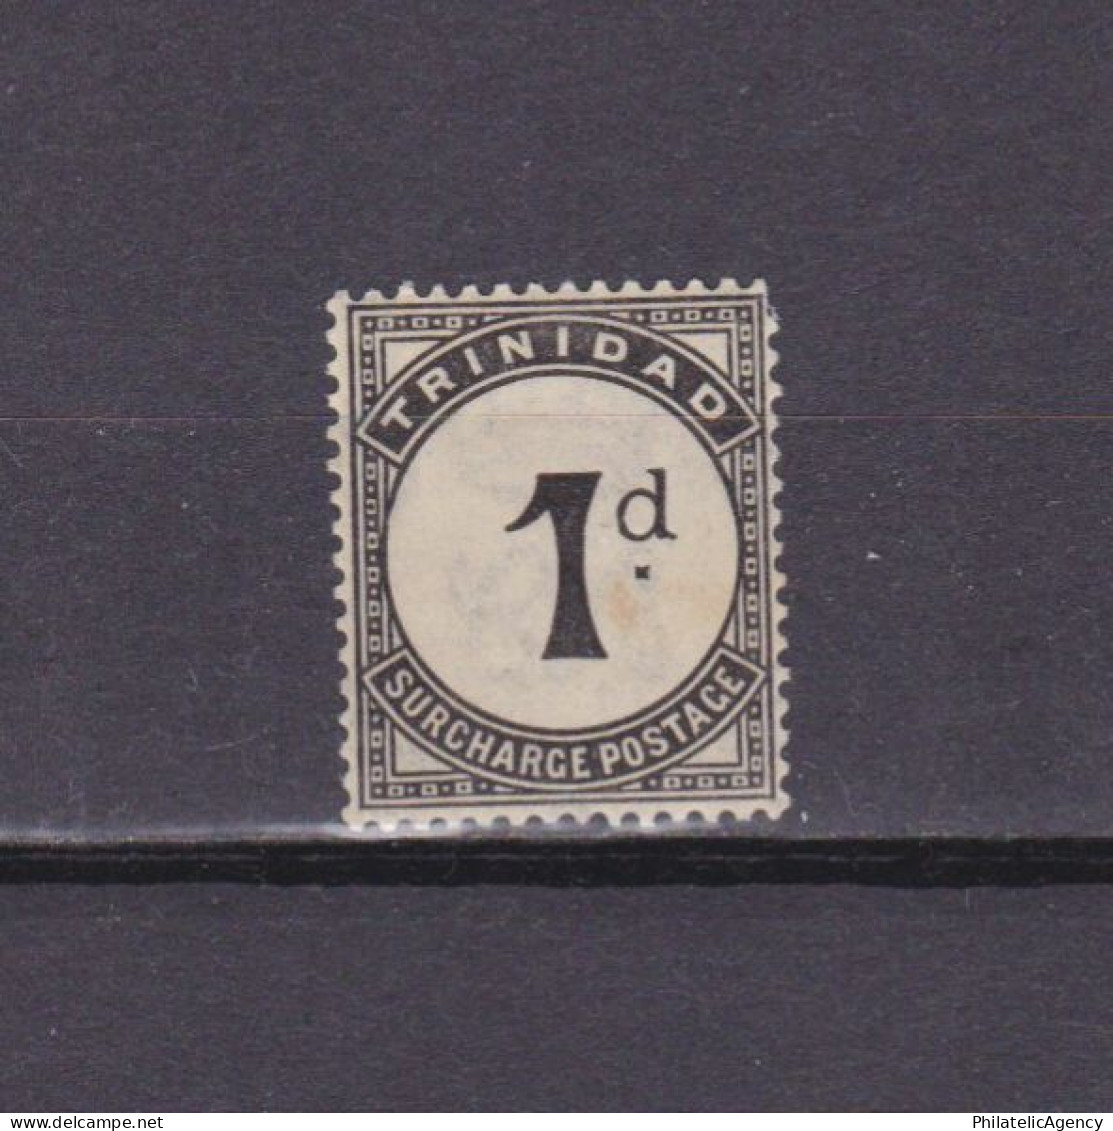 TRINIDAD & TOBAGO 1923, SG #D18, Wmk Mult Script CA, MH - Trinidad Y Tobago